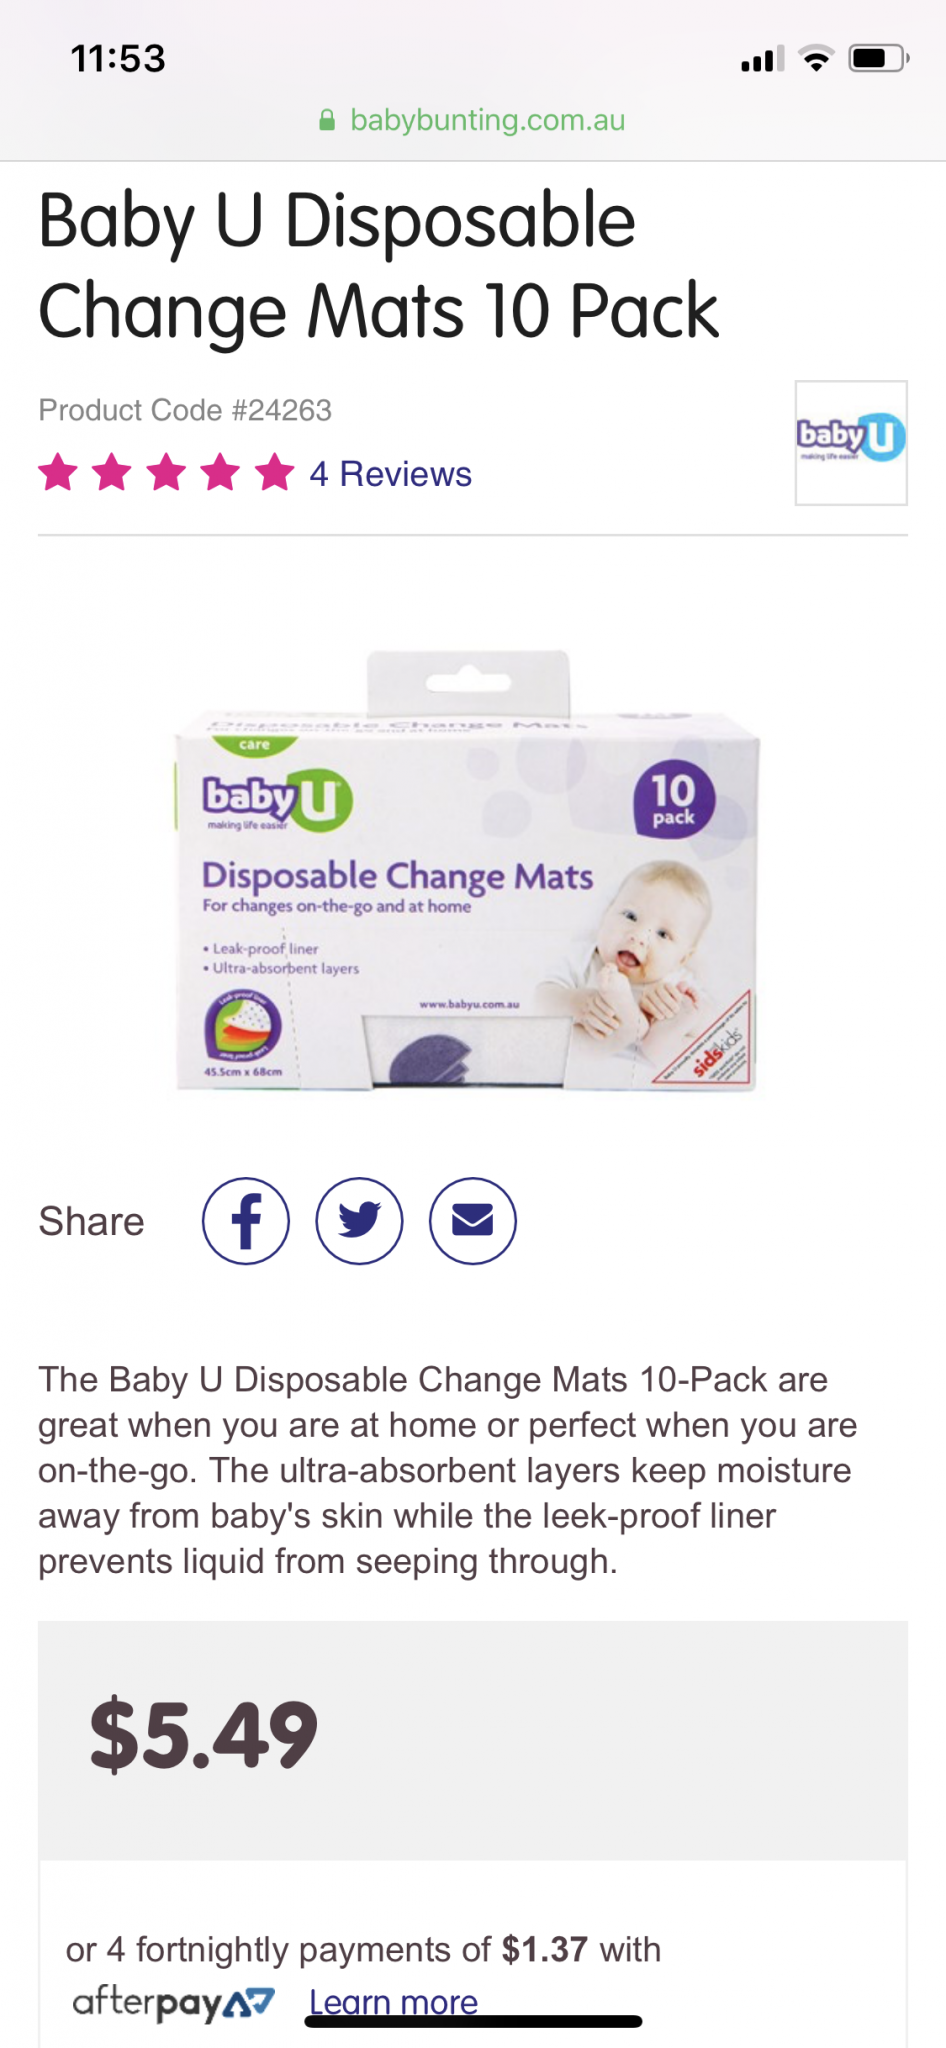 Disposable change mats